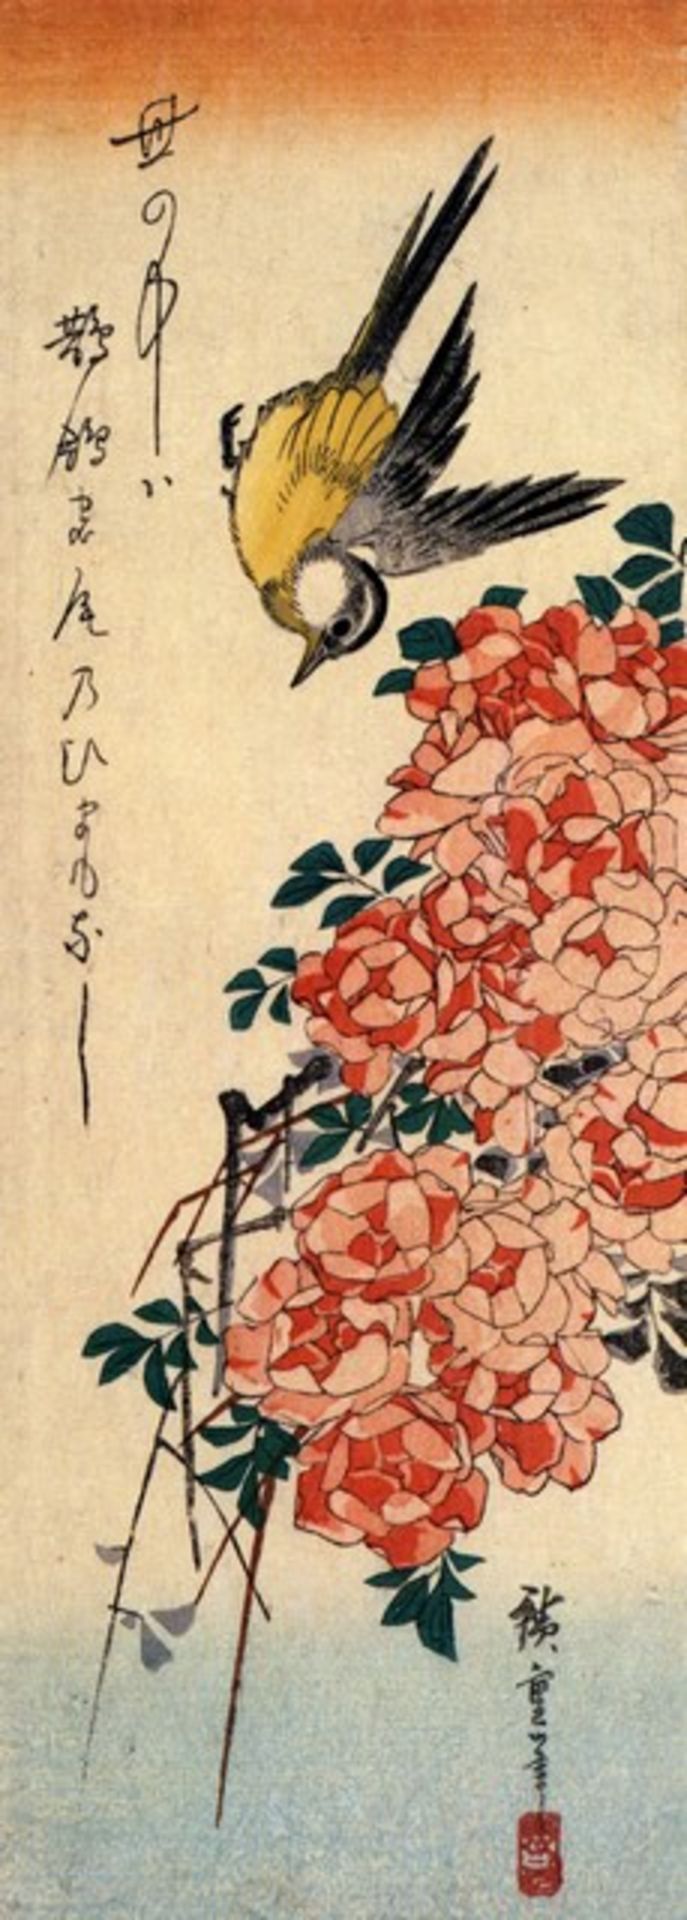 Hiroshige Wagtail and Roses